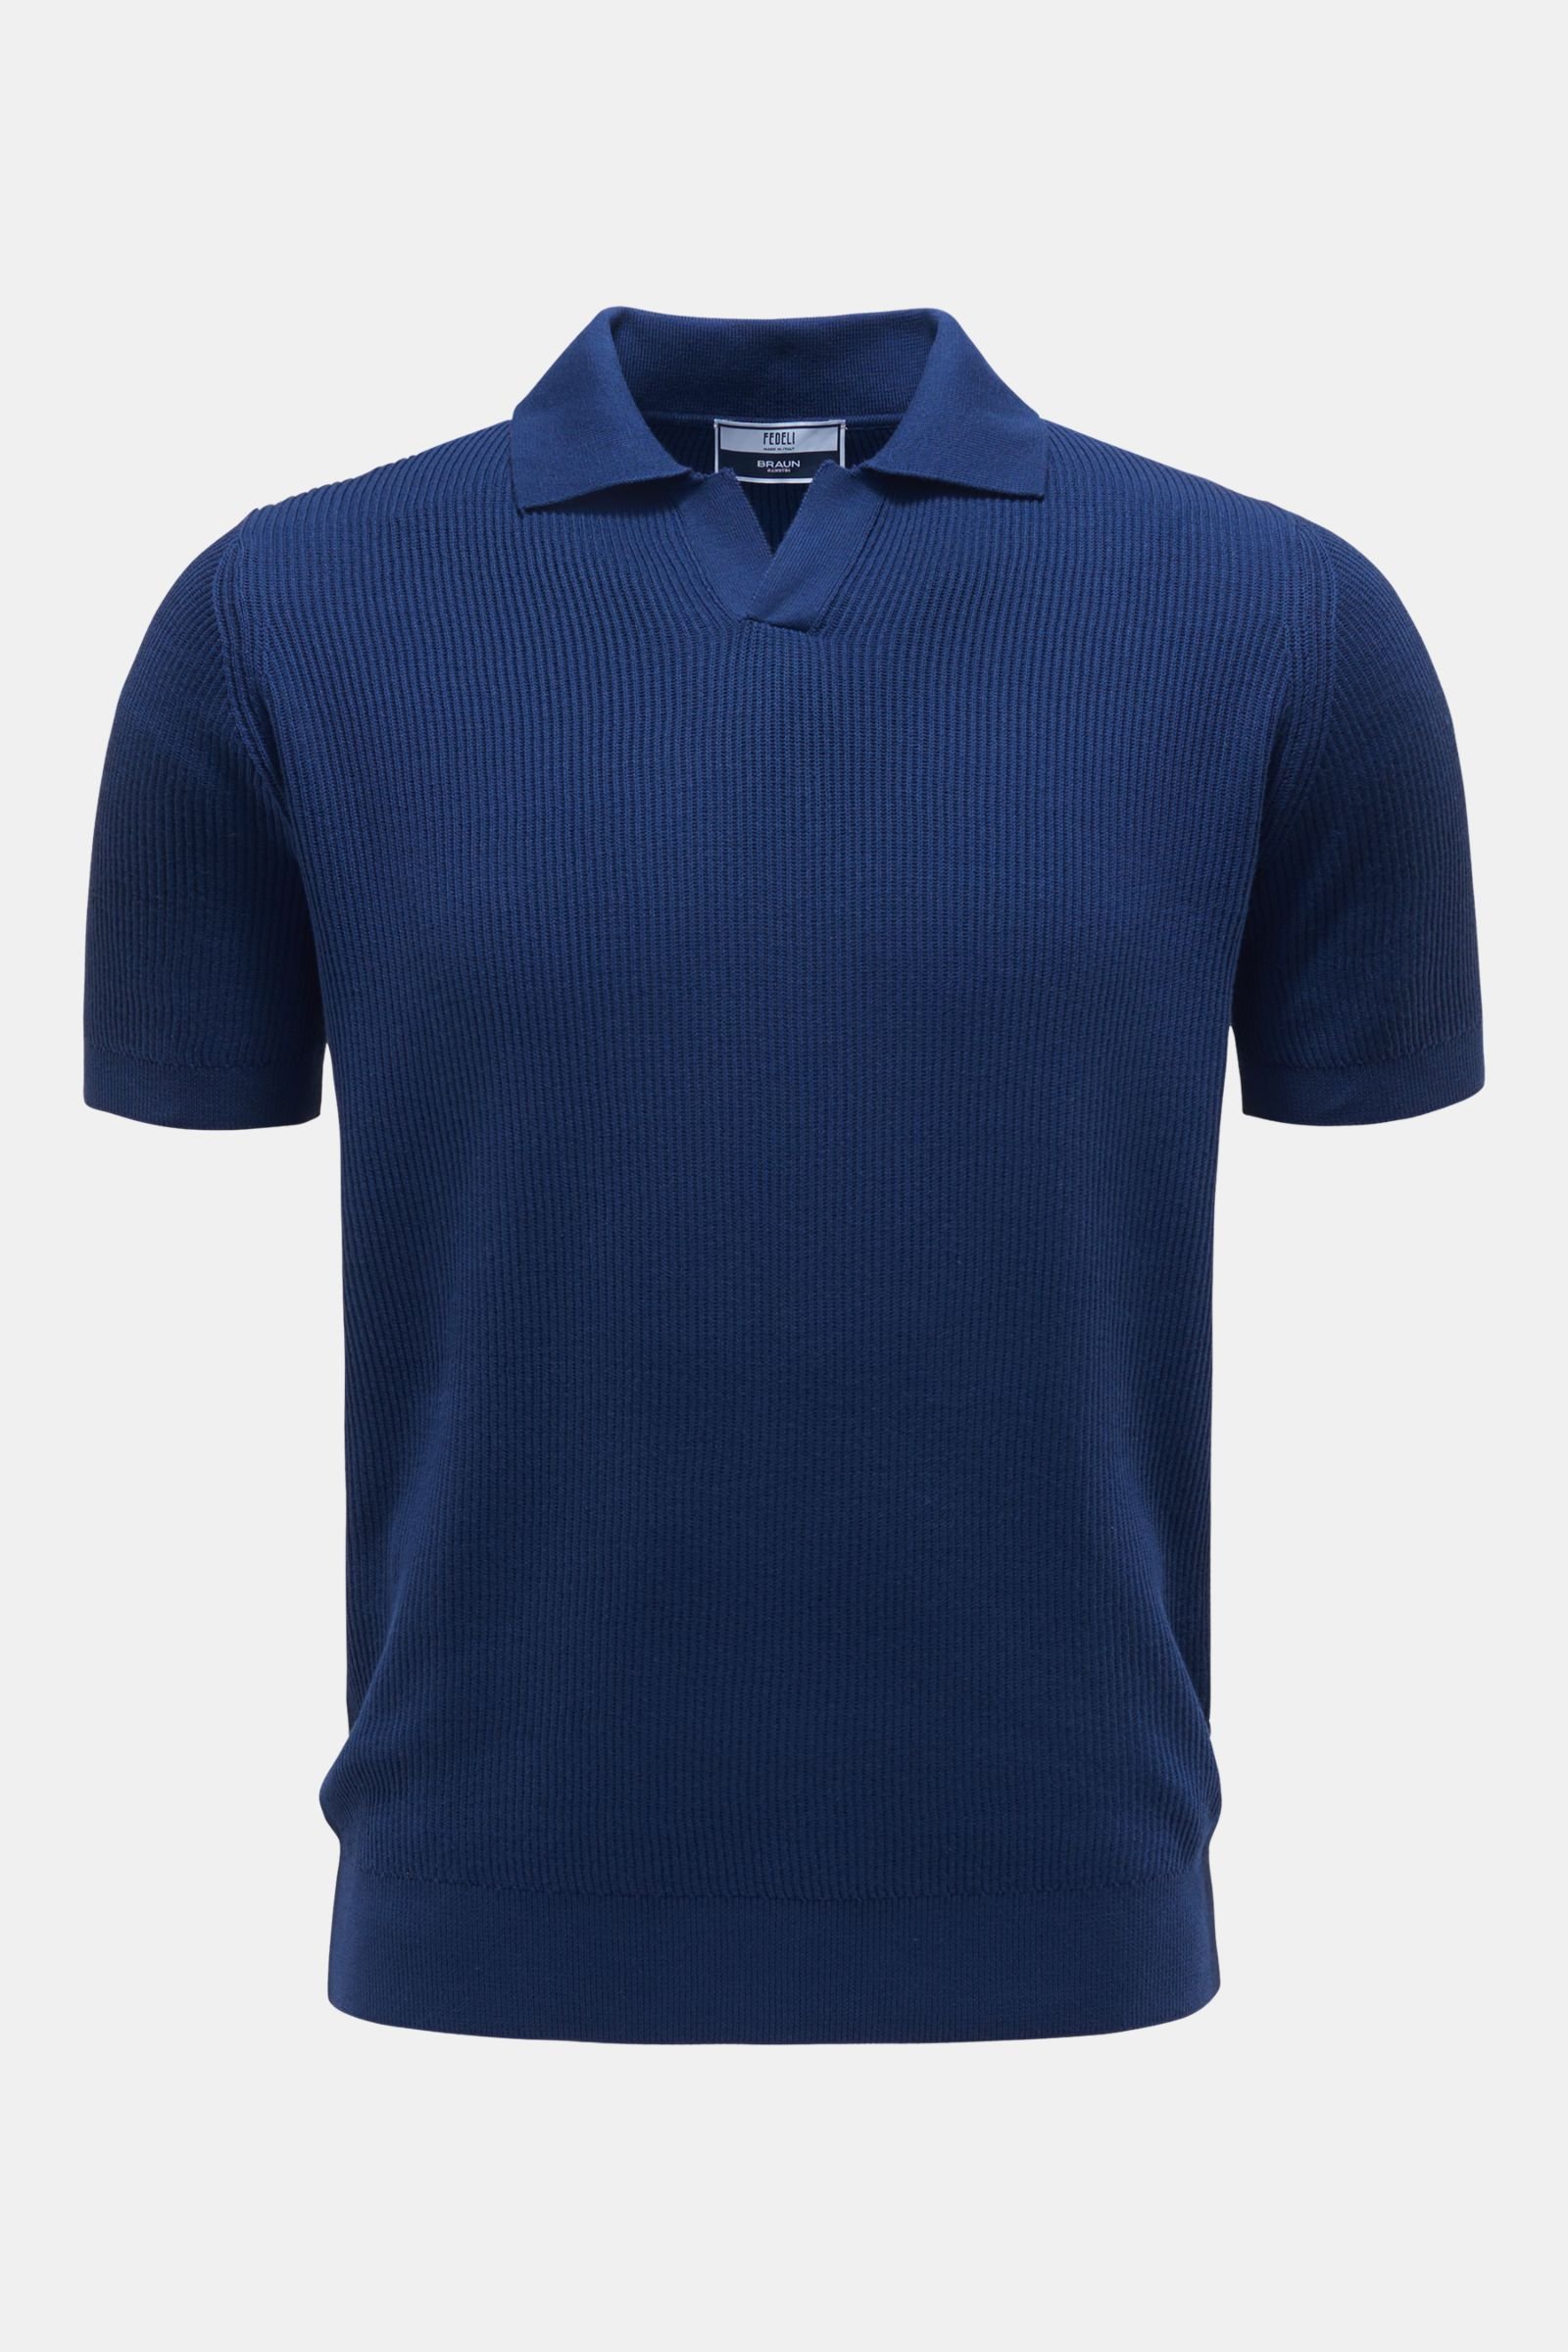 Short sleeve knit polo shirt navy